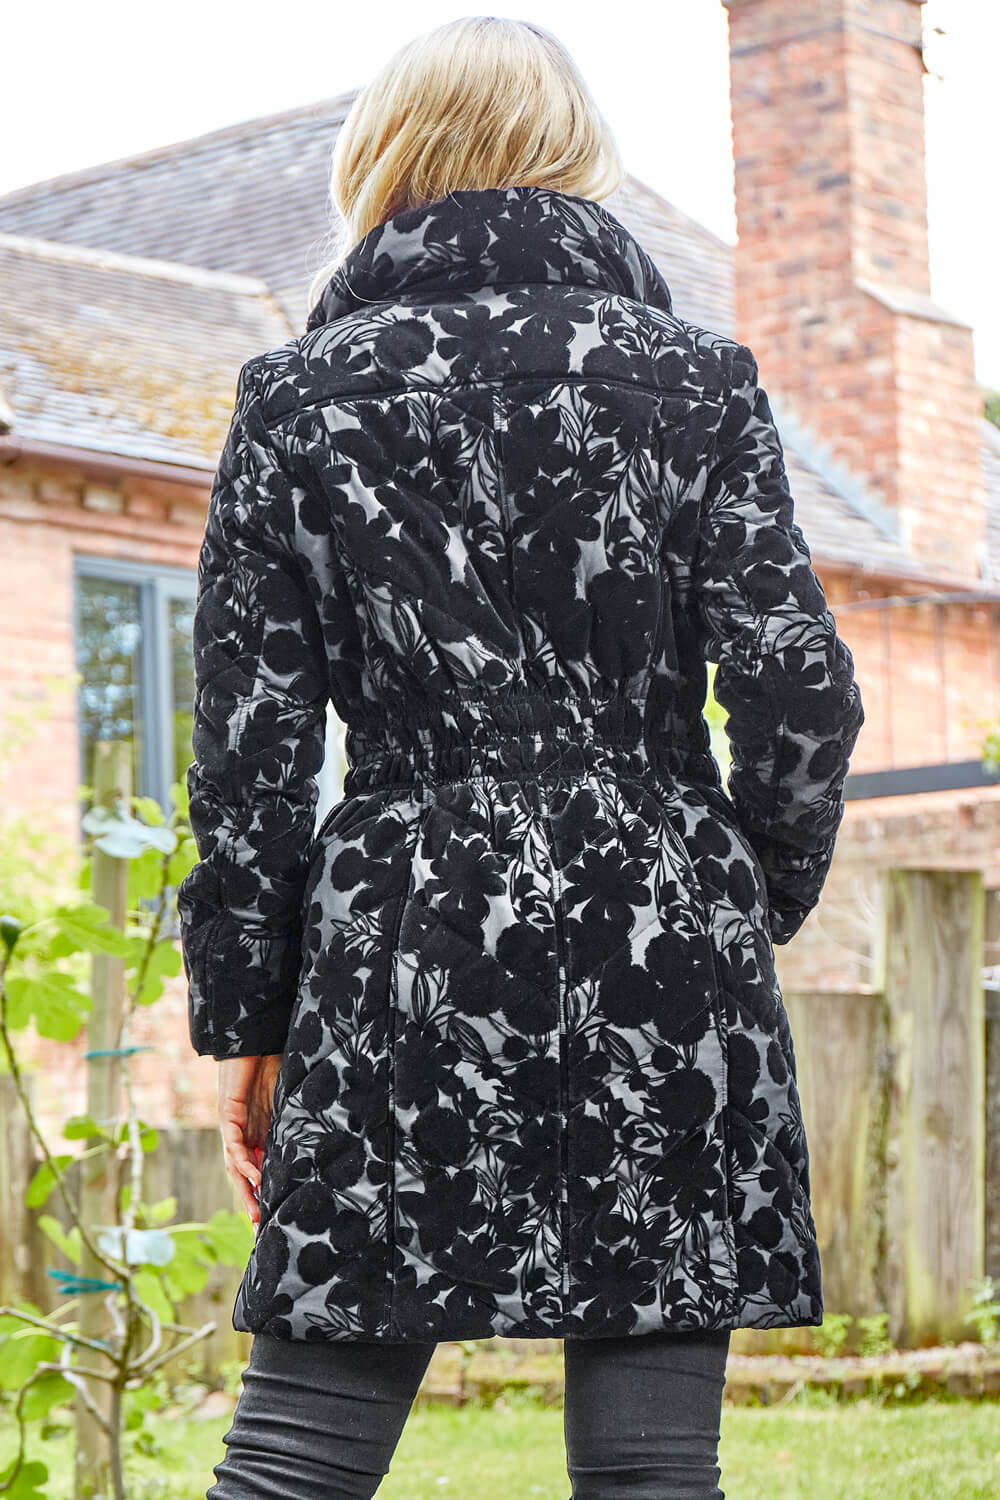 Black Floral Flock Detail Padded Coat, Image 2 of 4